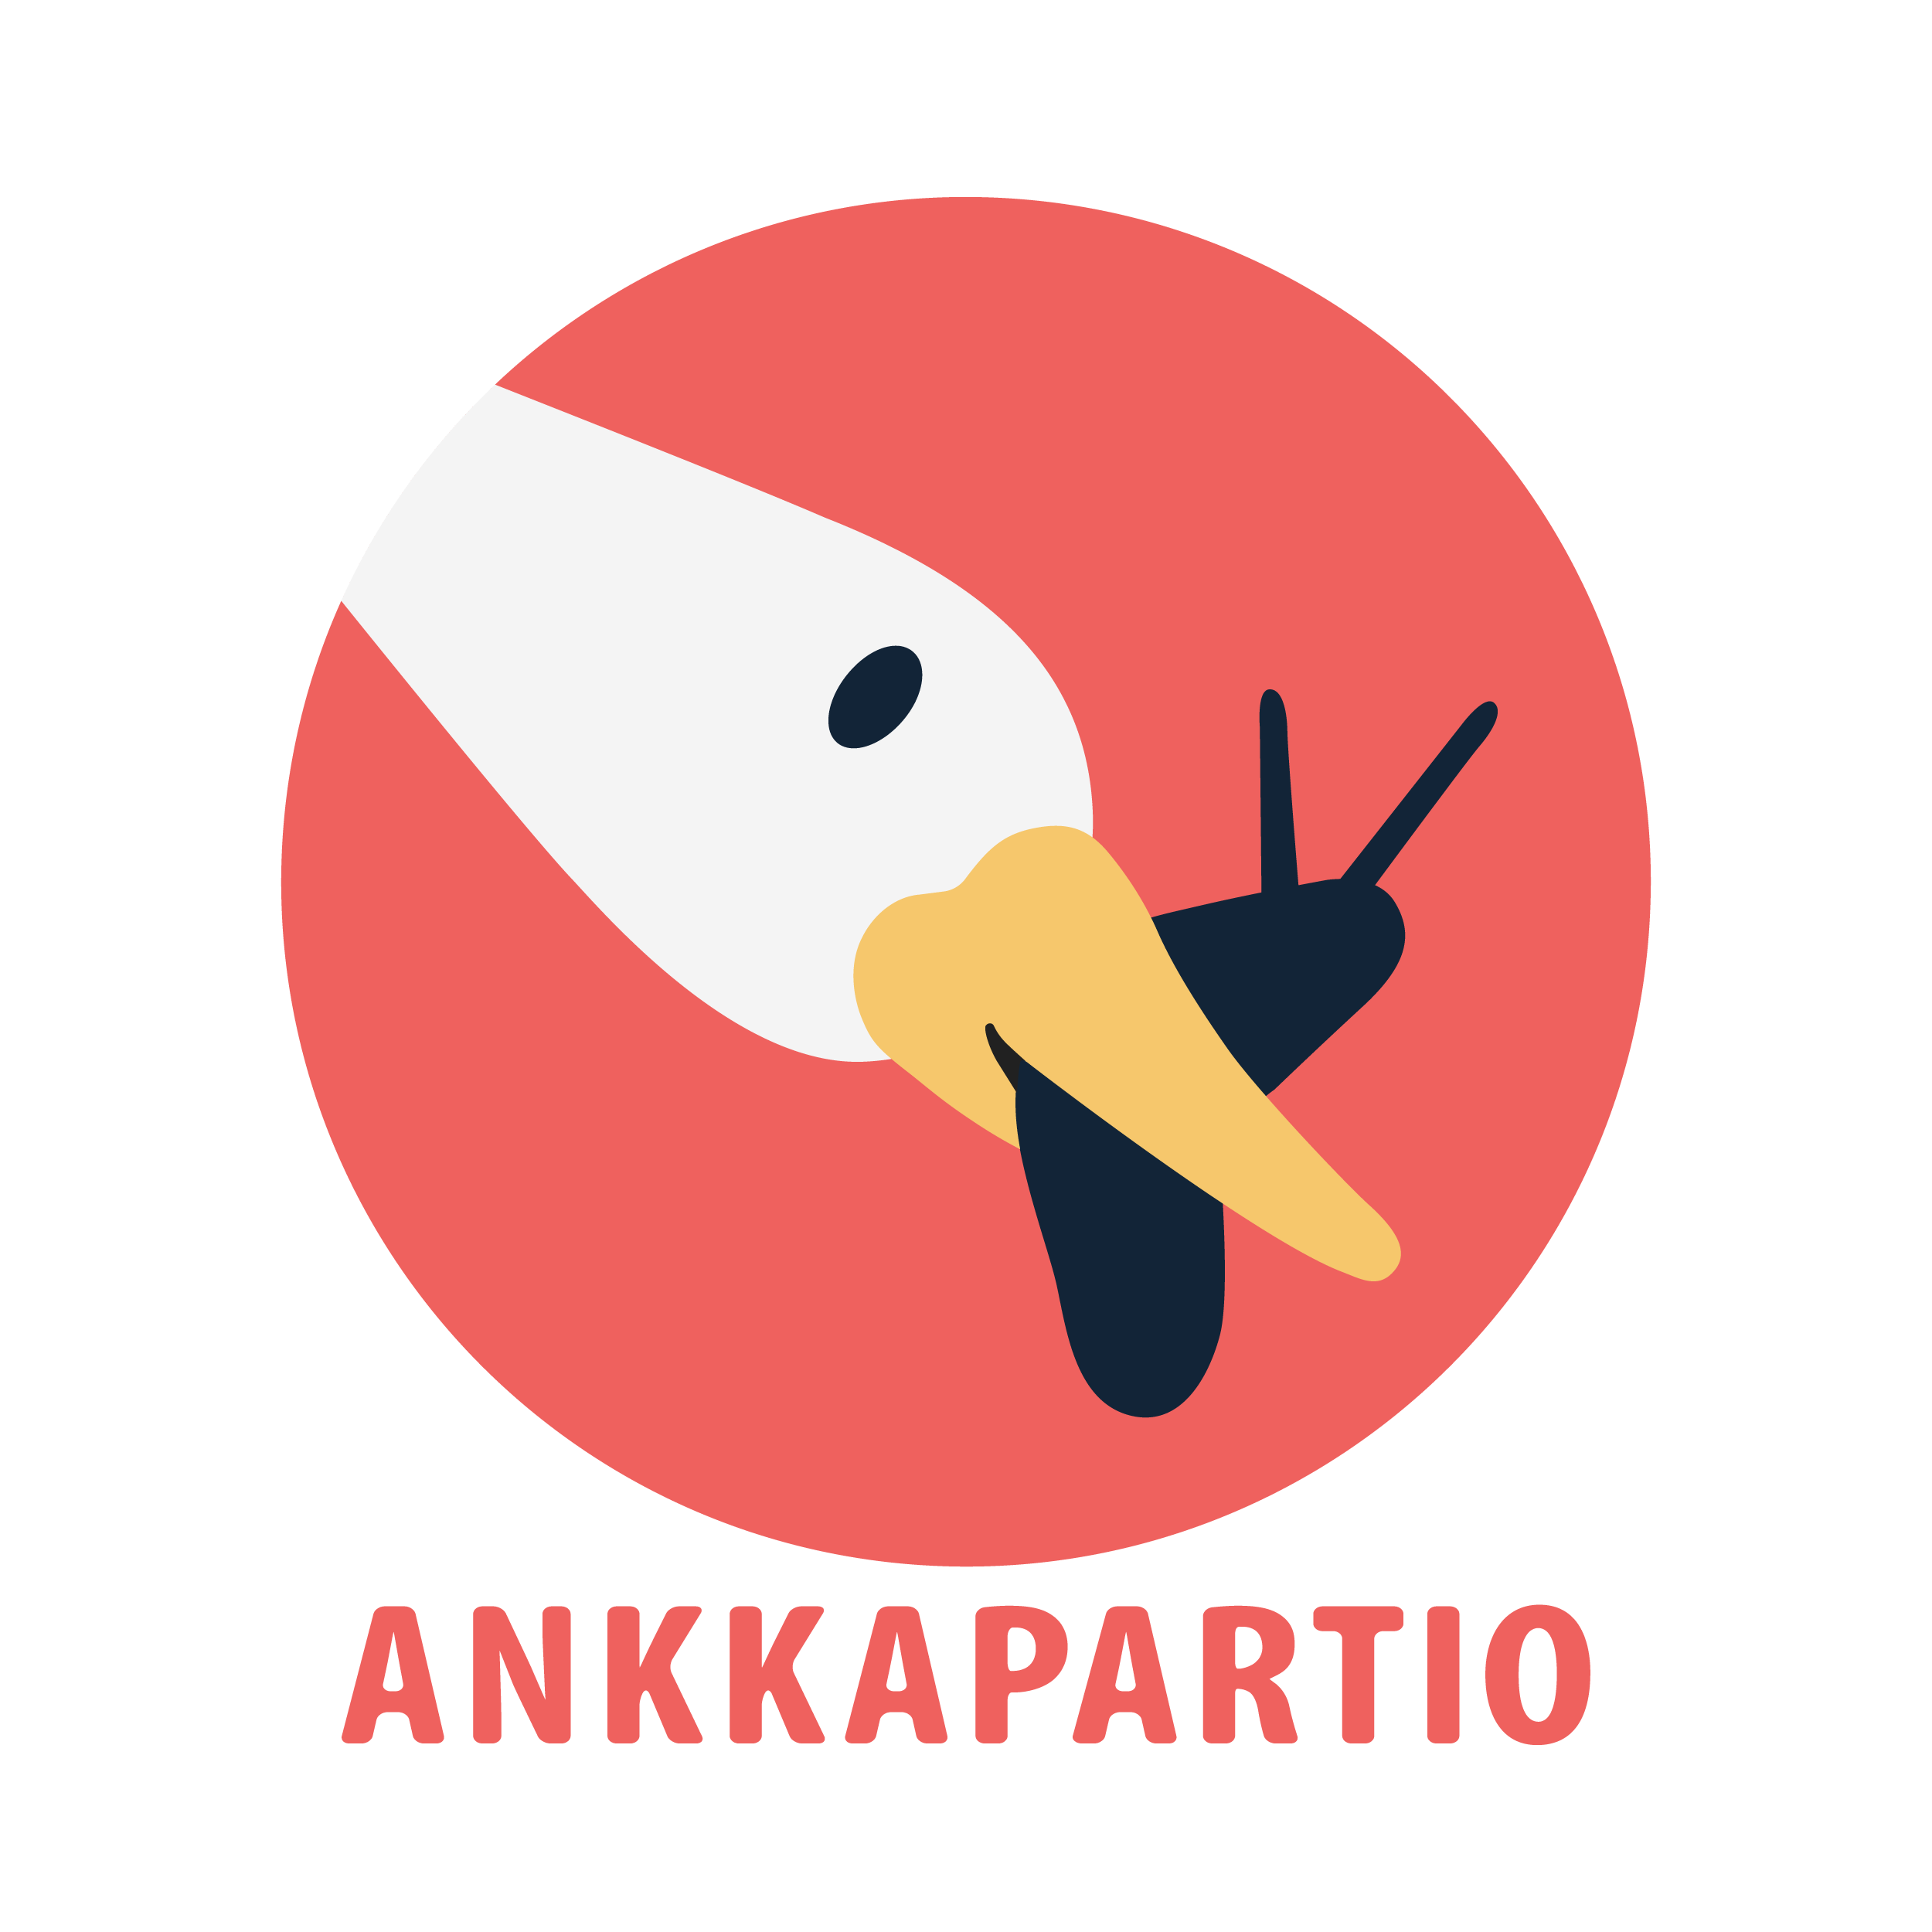 Ankkapartio_logo_color_transparent.png